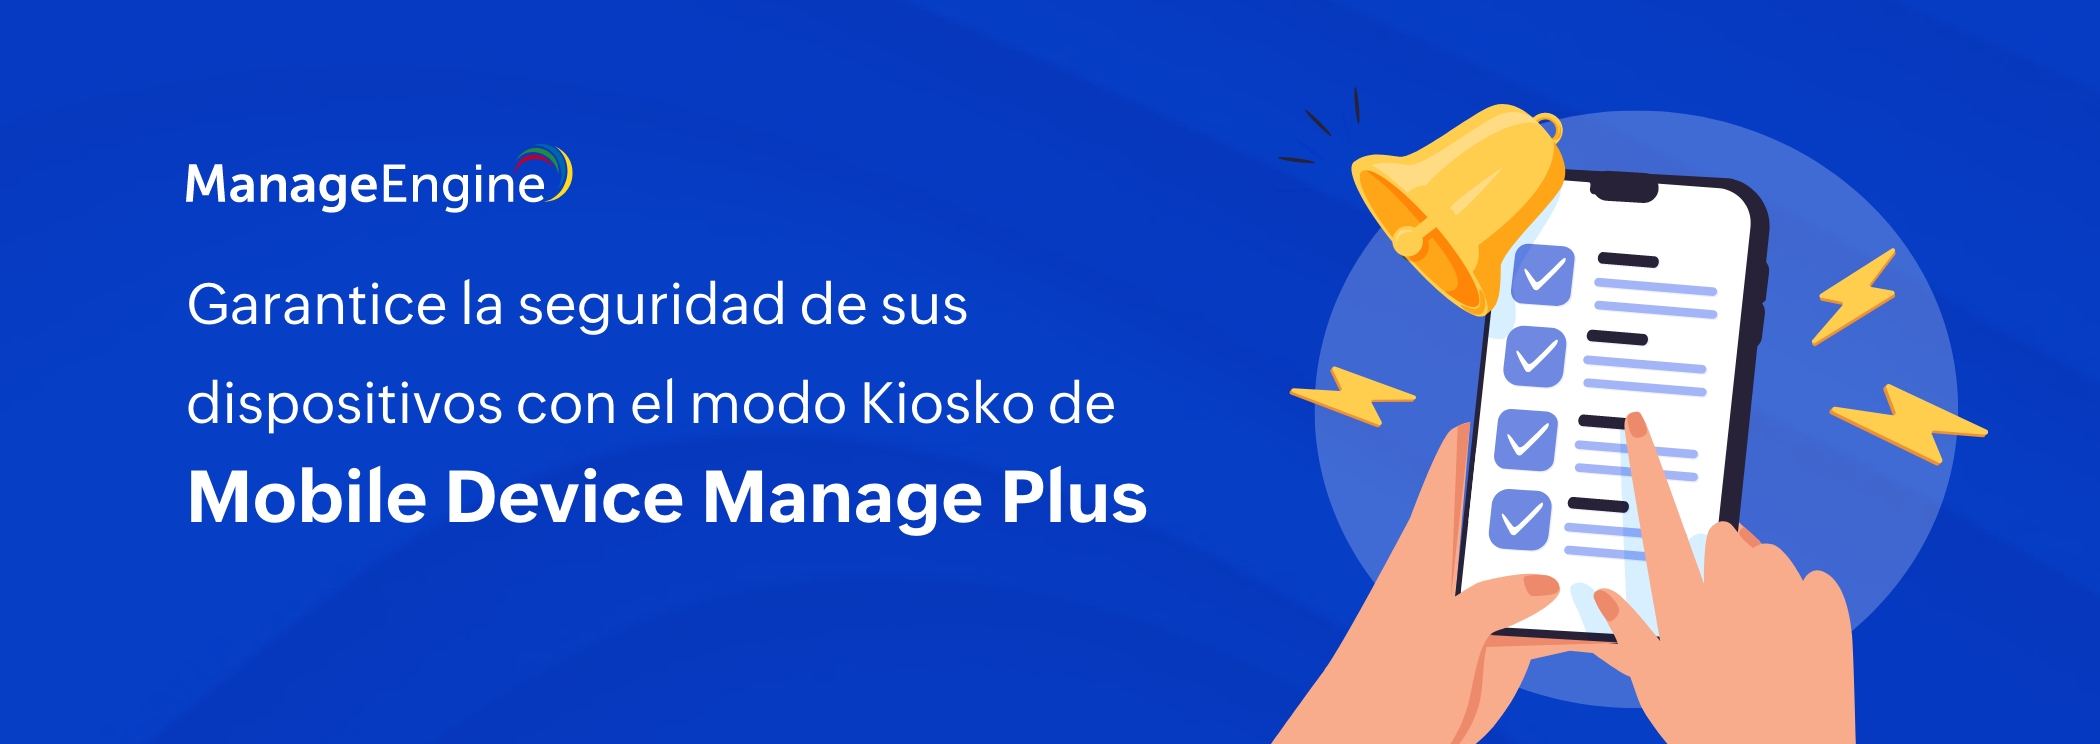 Garantice la seguridad de sus dispositivos móviles con el modo Kiosko de ManageEngine Mobile Device Manage Plus